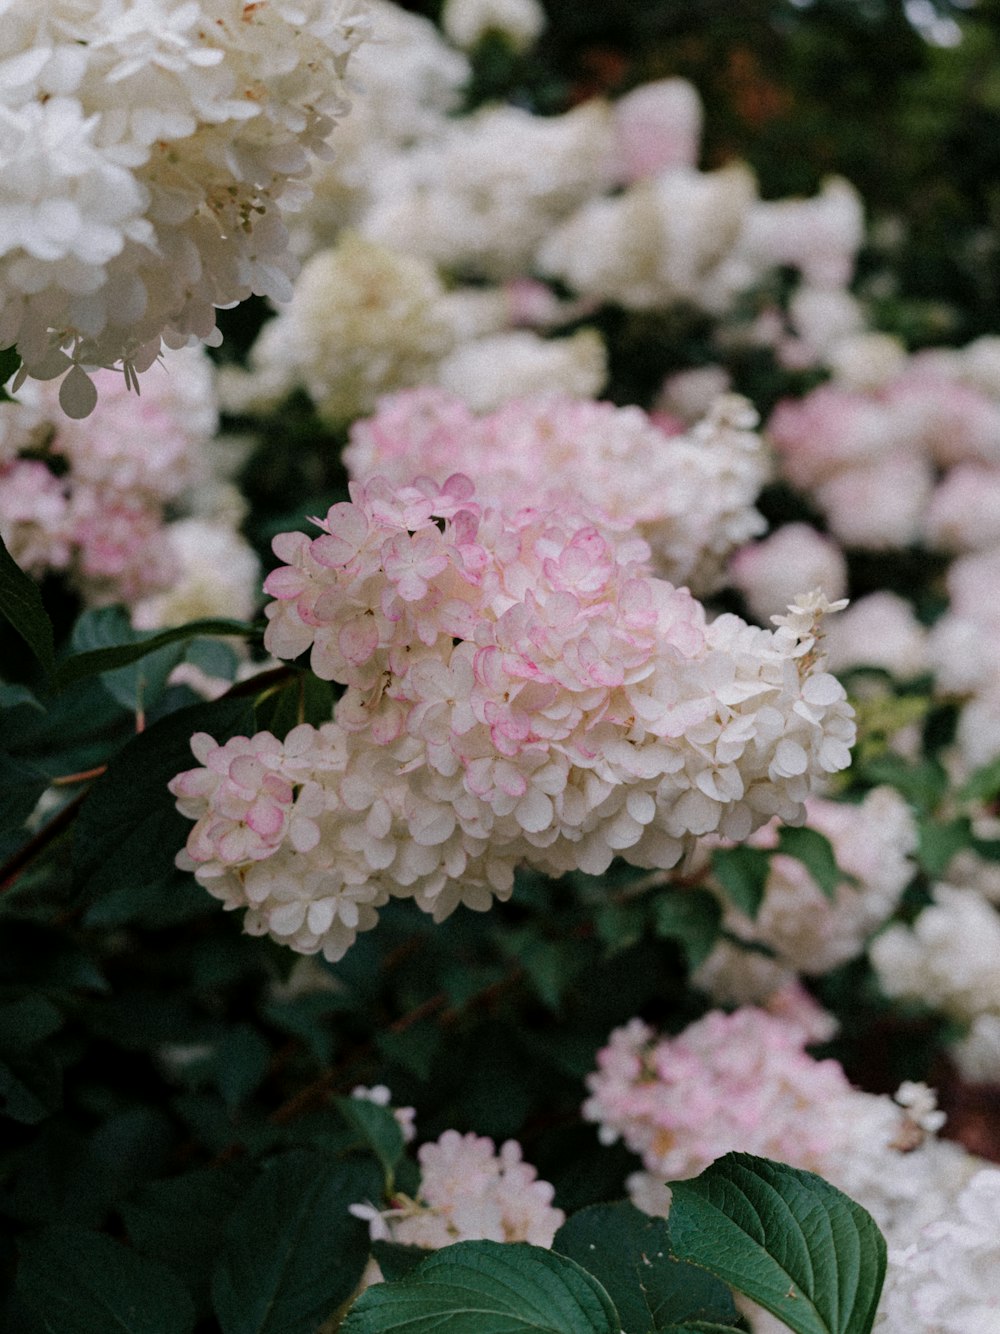 un mazzo di fiori rosa e bianchi in un giardino